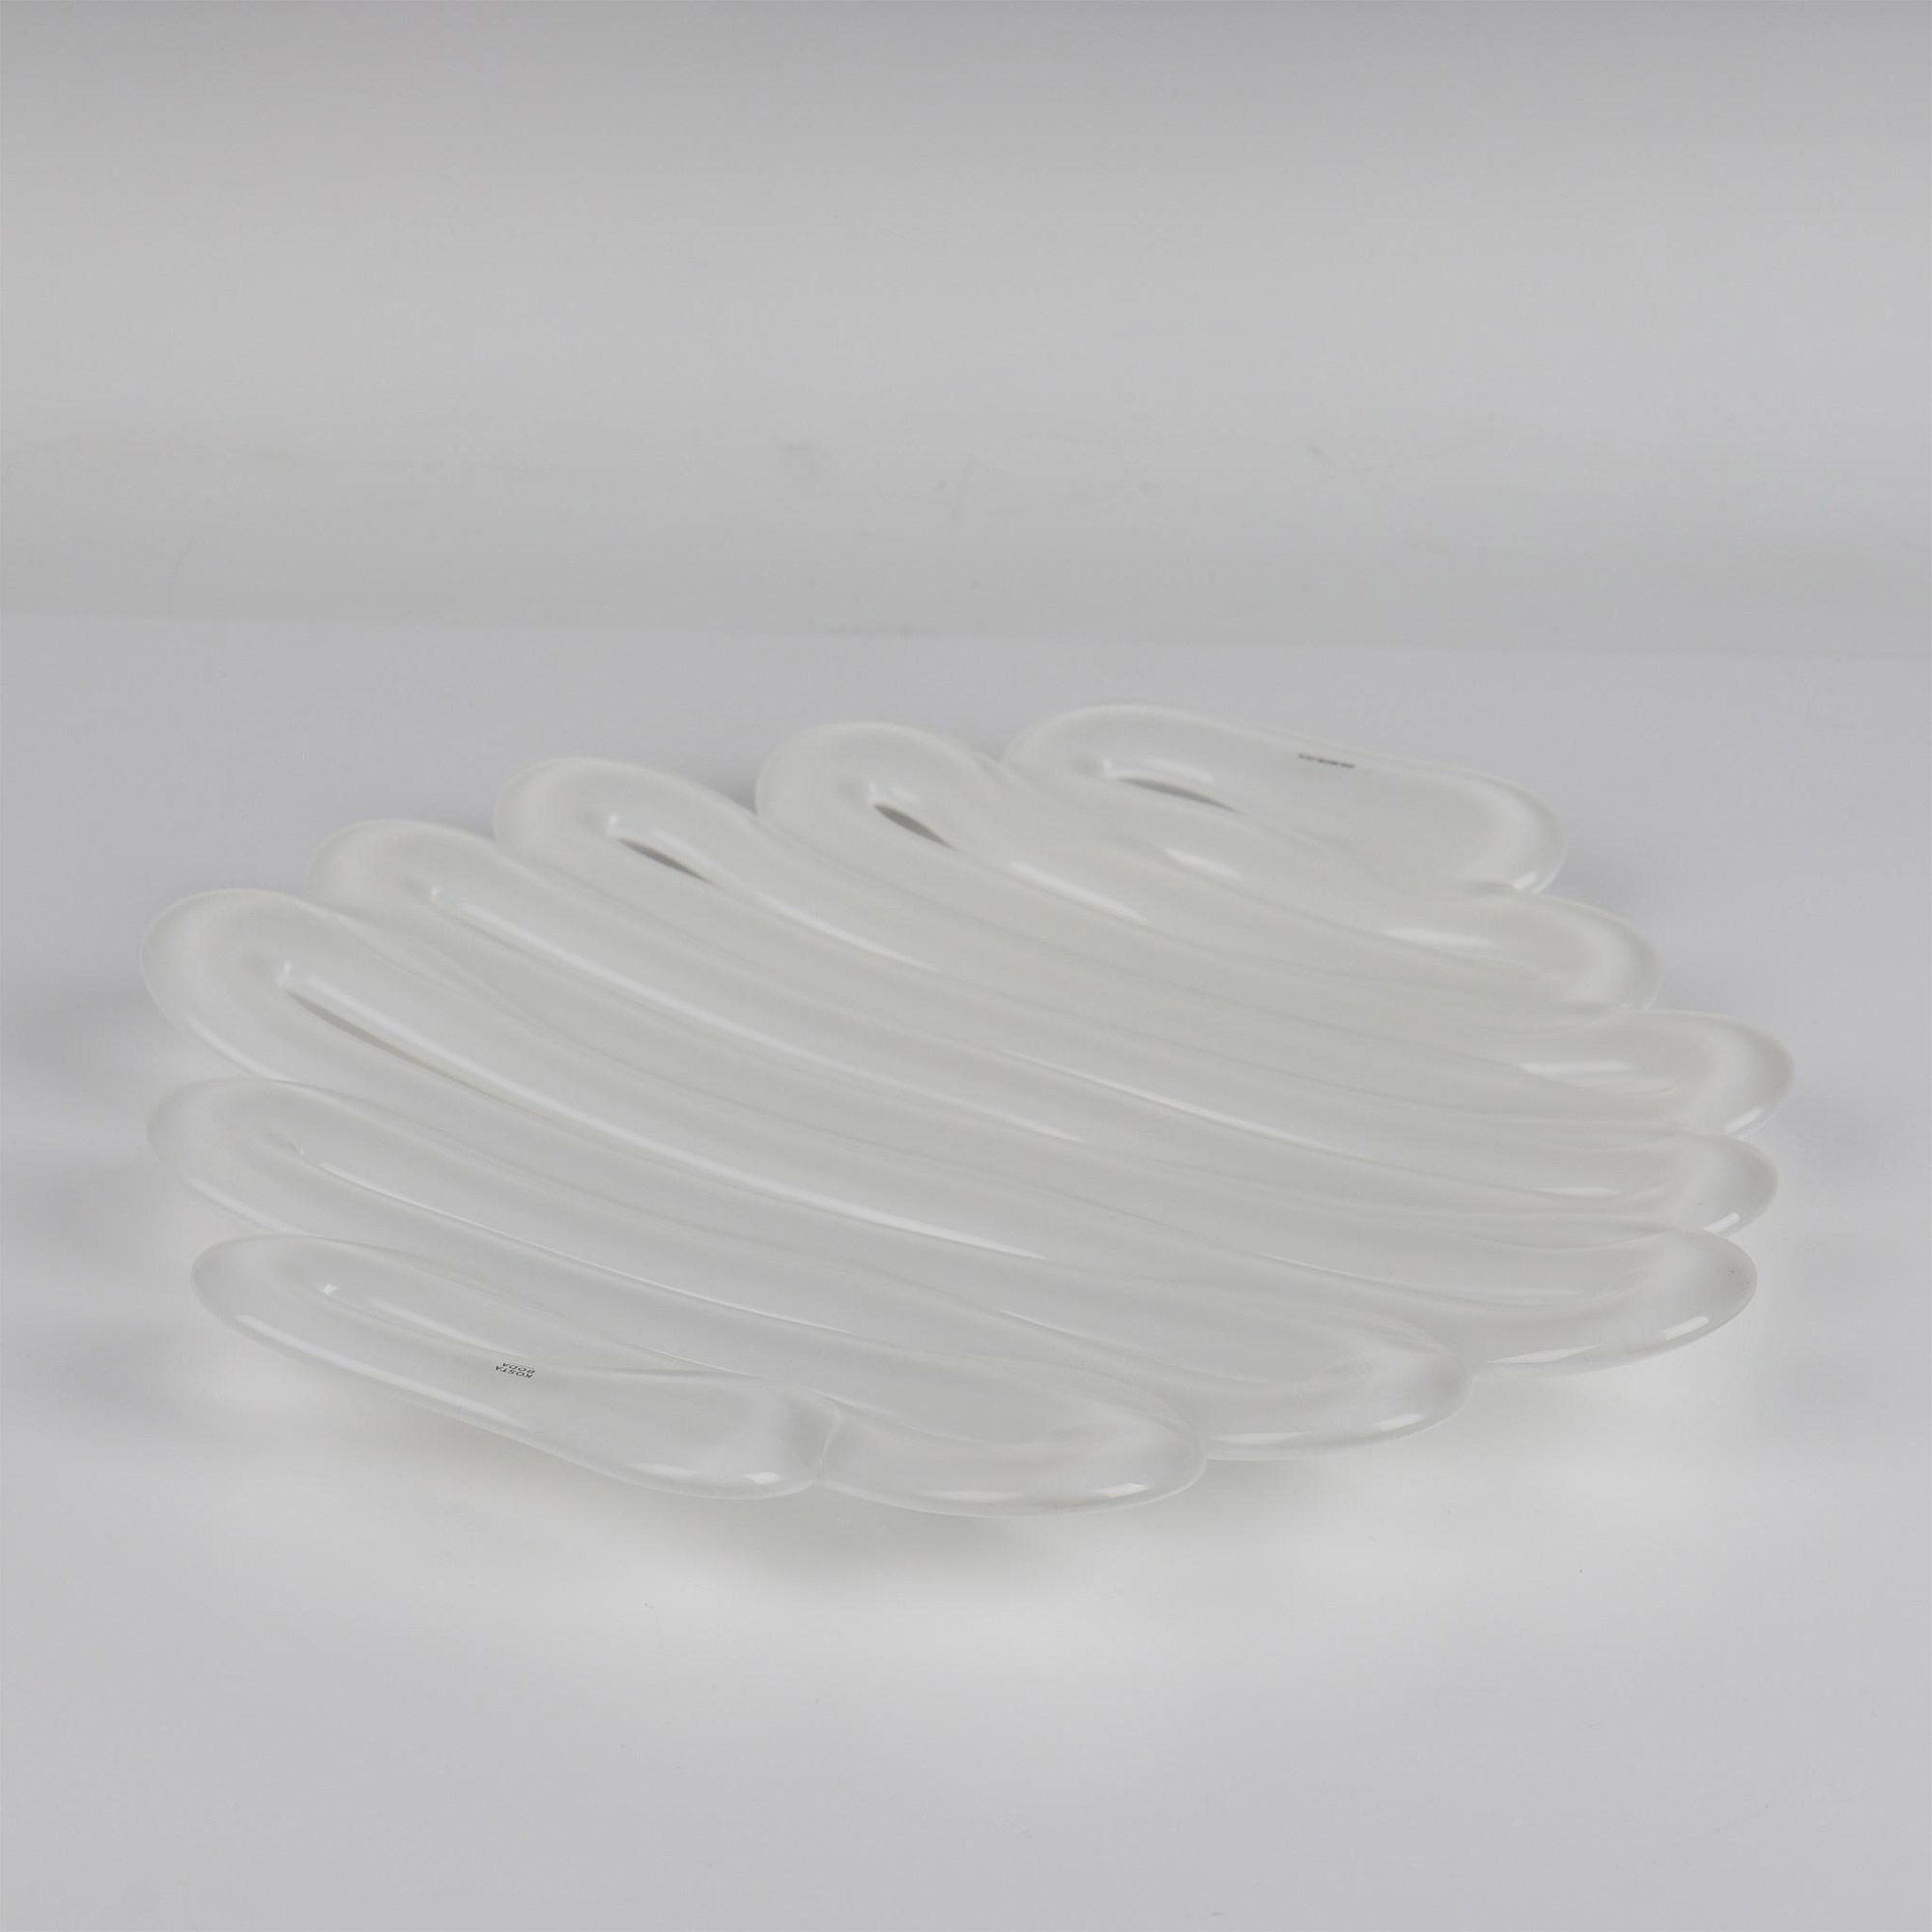 Anna Ehrner for Kosta Boda Energy Bowl-Platter, Large White - Image 5 of 6